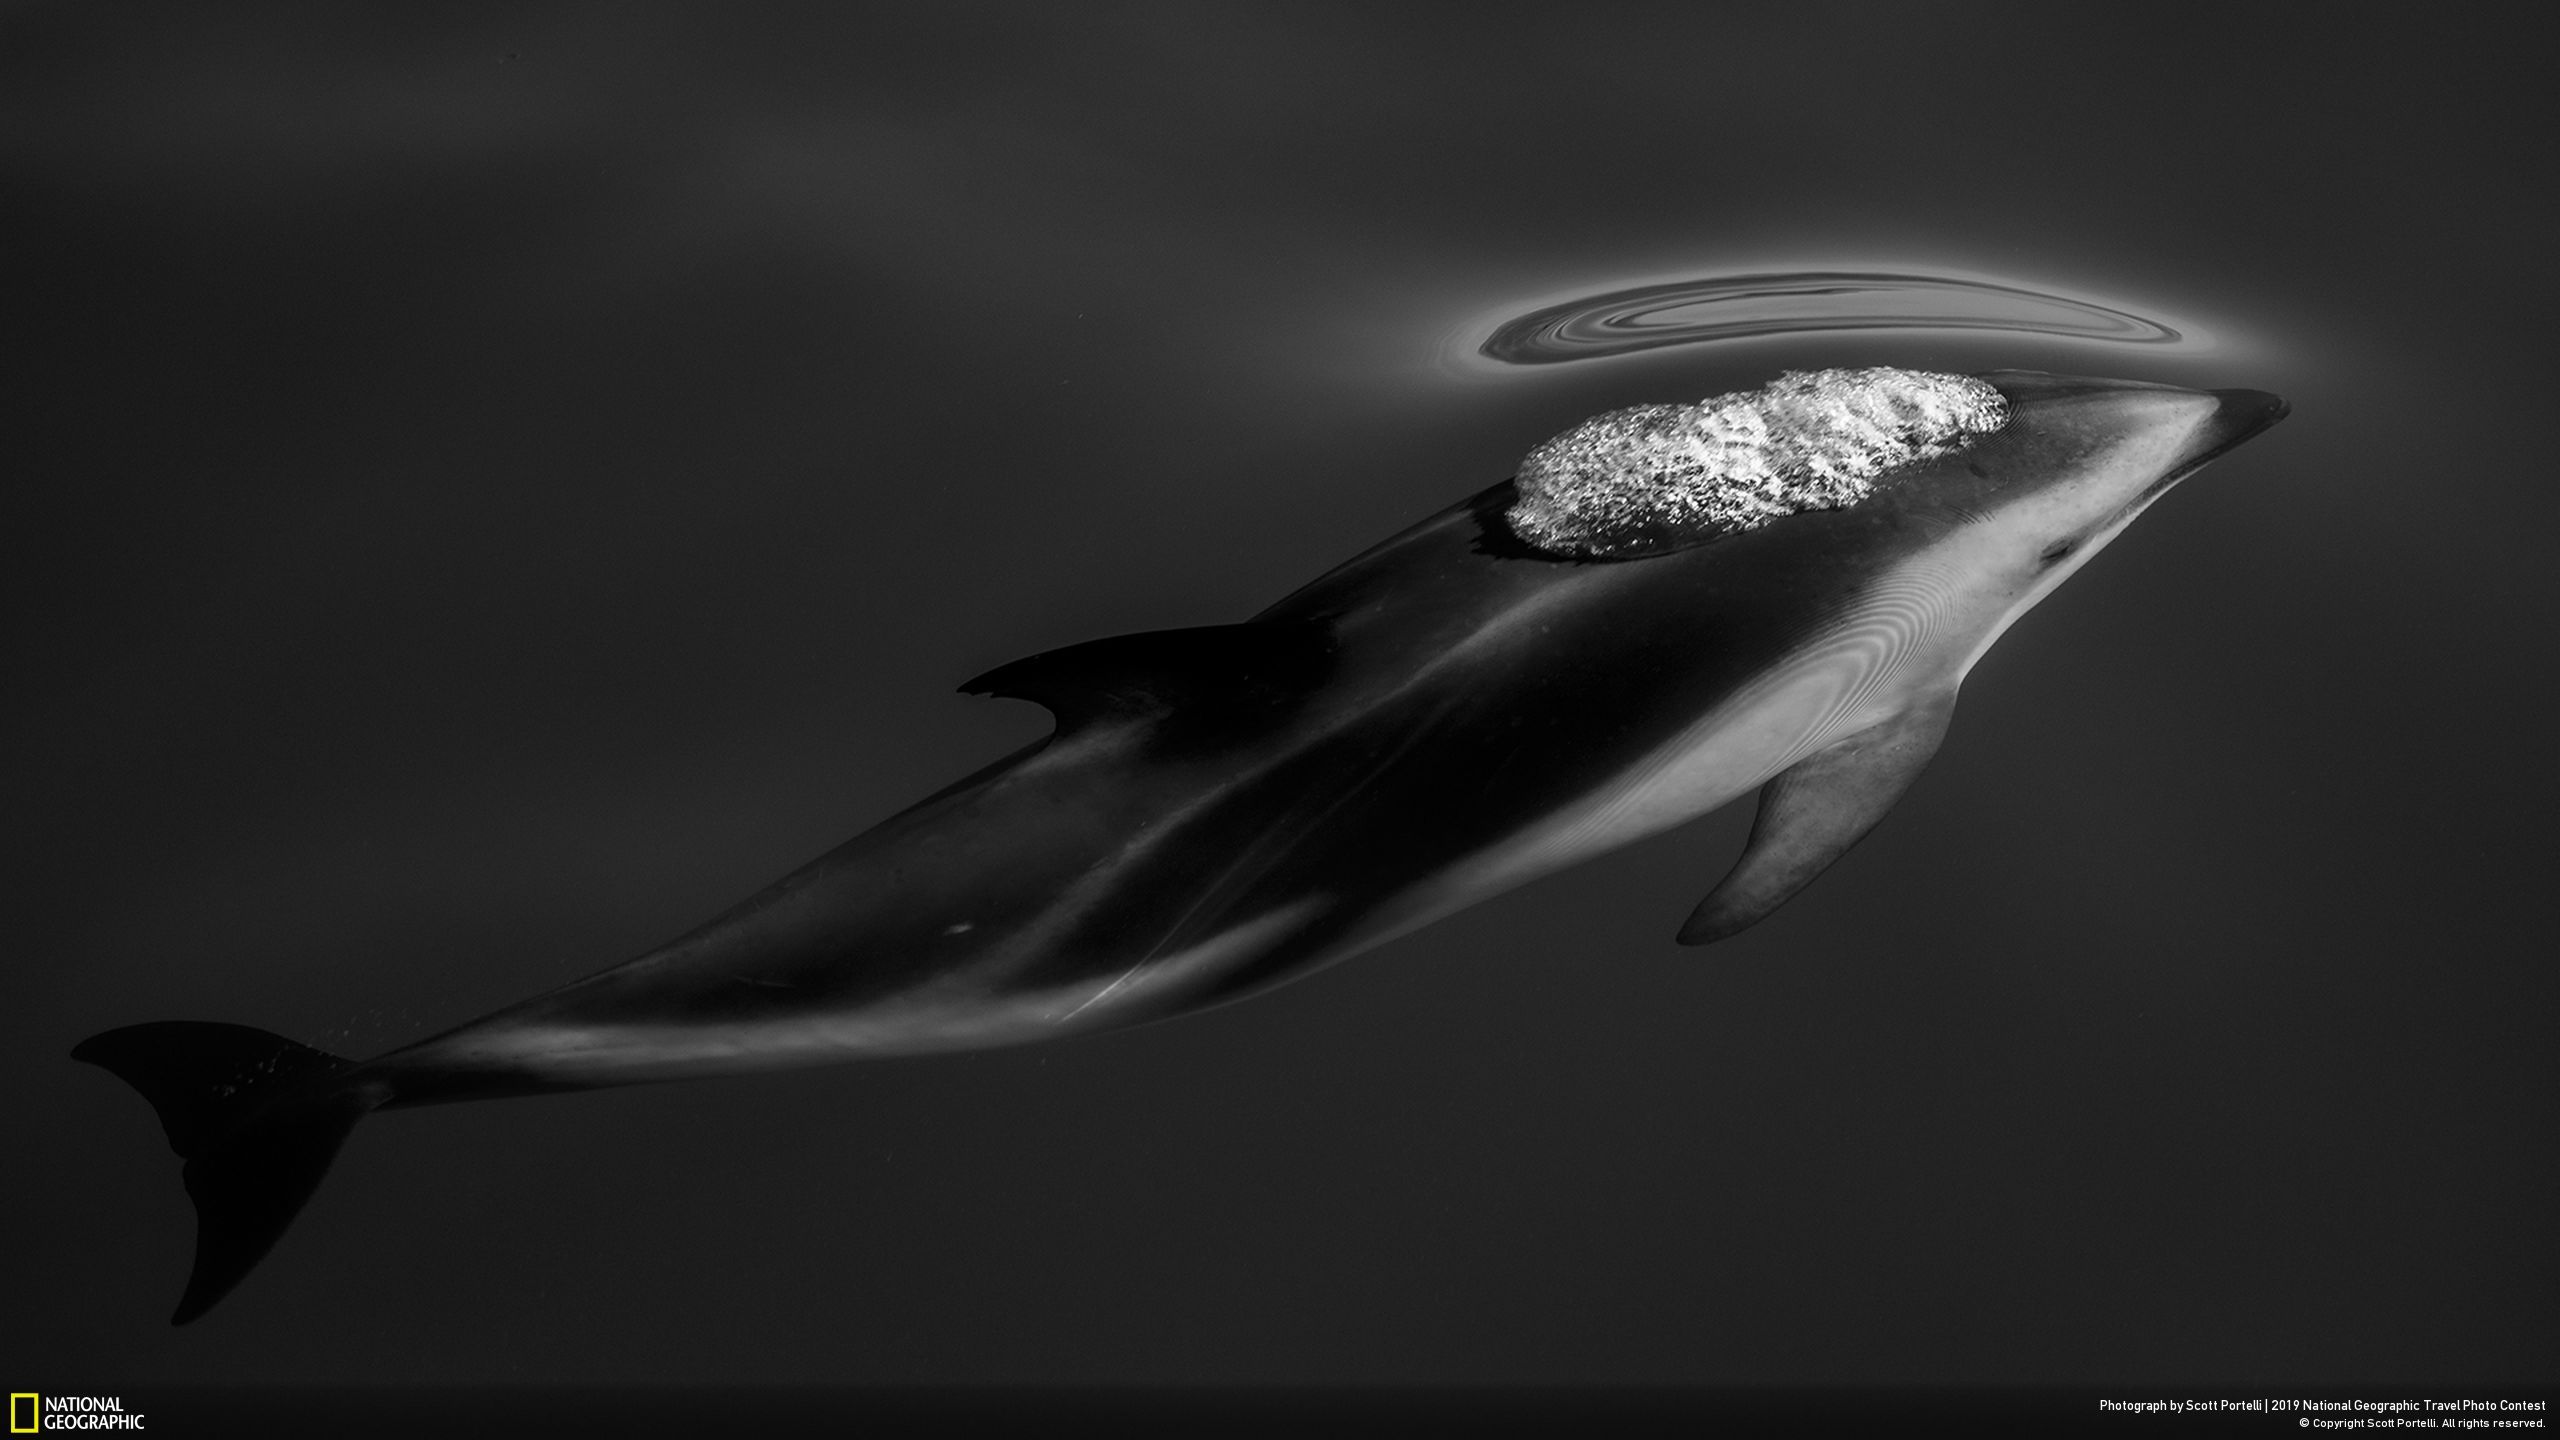 Ảnh đạt giải ba mục Thiên nhiên là “Dusky Dolphins” (tạm dịch: Những con cá heo Dusky) của nhiếp ảnh gia Scott Portelli. Bức ảnh được chụp ngoài khơi bờ biển Kaikoura ở Nam Đảo, New Zealand.